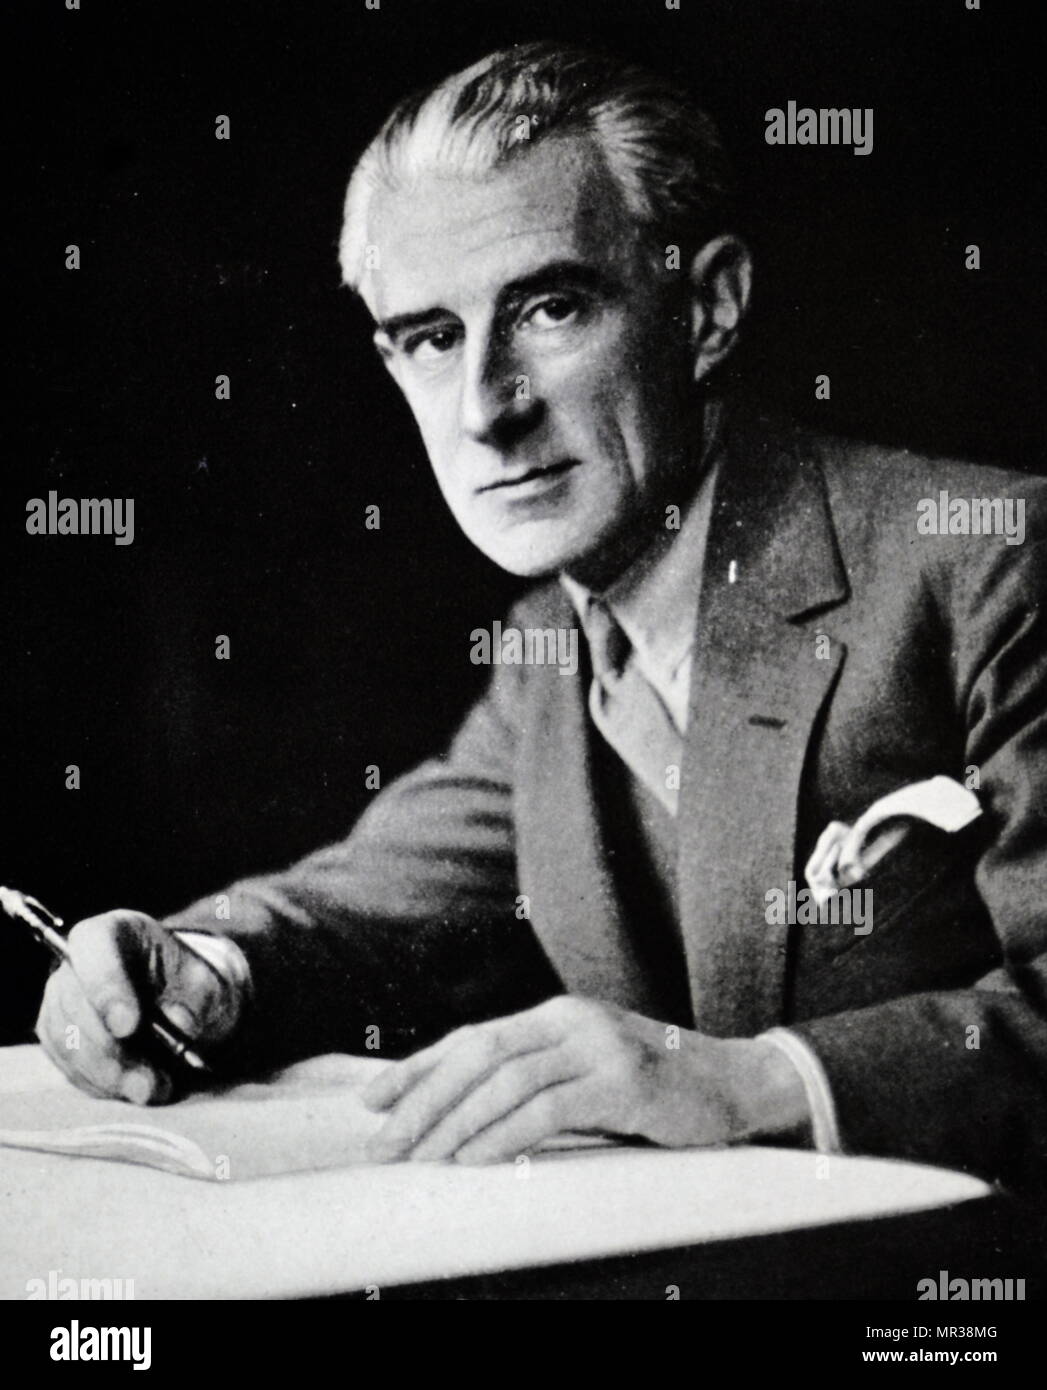 Fotografische Porträt von Maurice Ravel (1875-1937), französischer Komponist,  Pianist und Dirigent. Vom 20. Jahrhundert Stockfotografie - Alamy